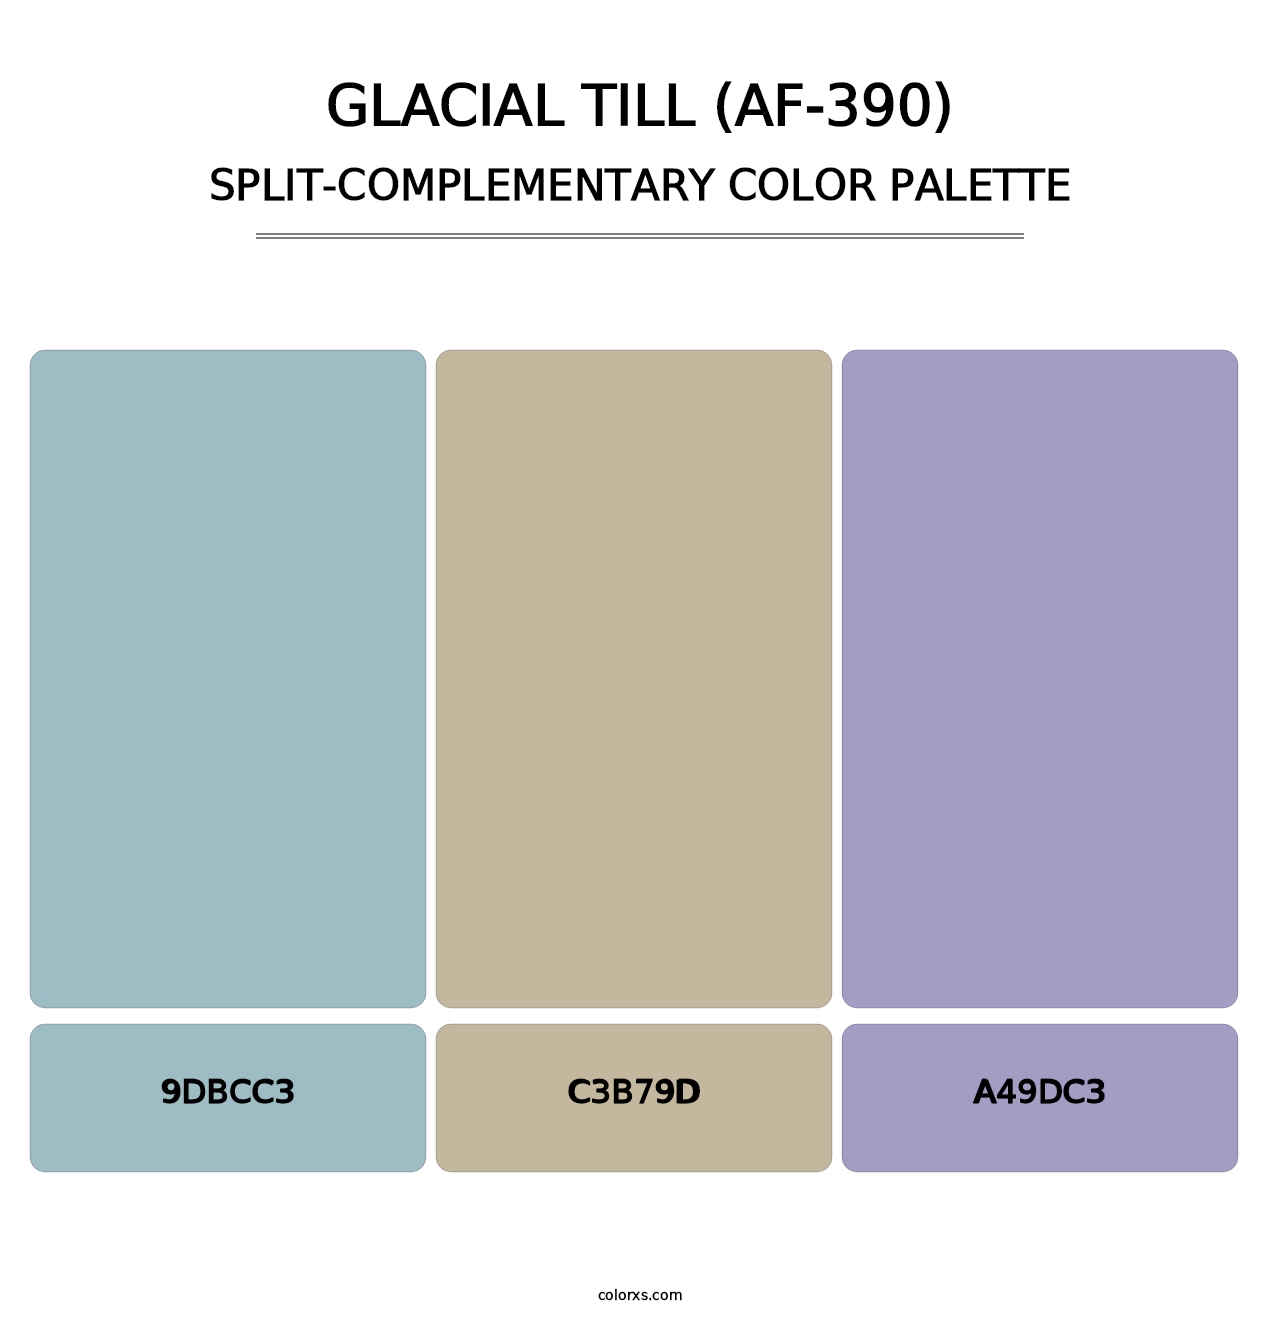 Glacial Till (AF-390) - Split-Complementary Color Palette